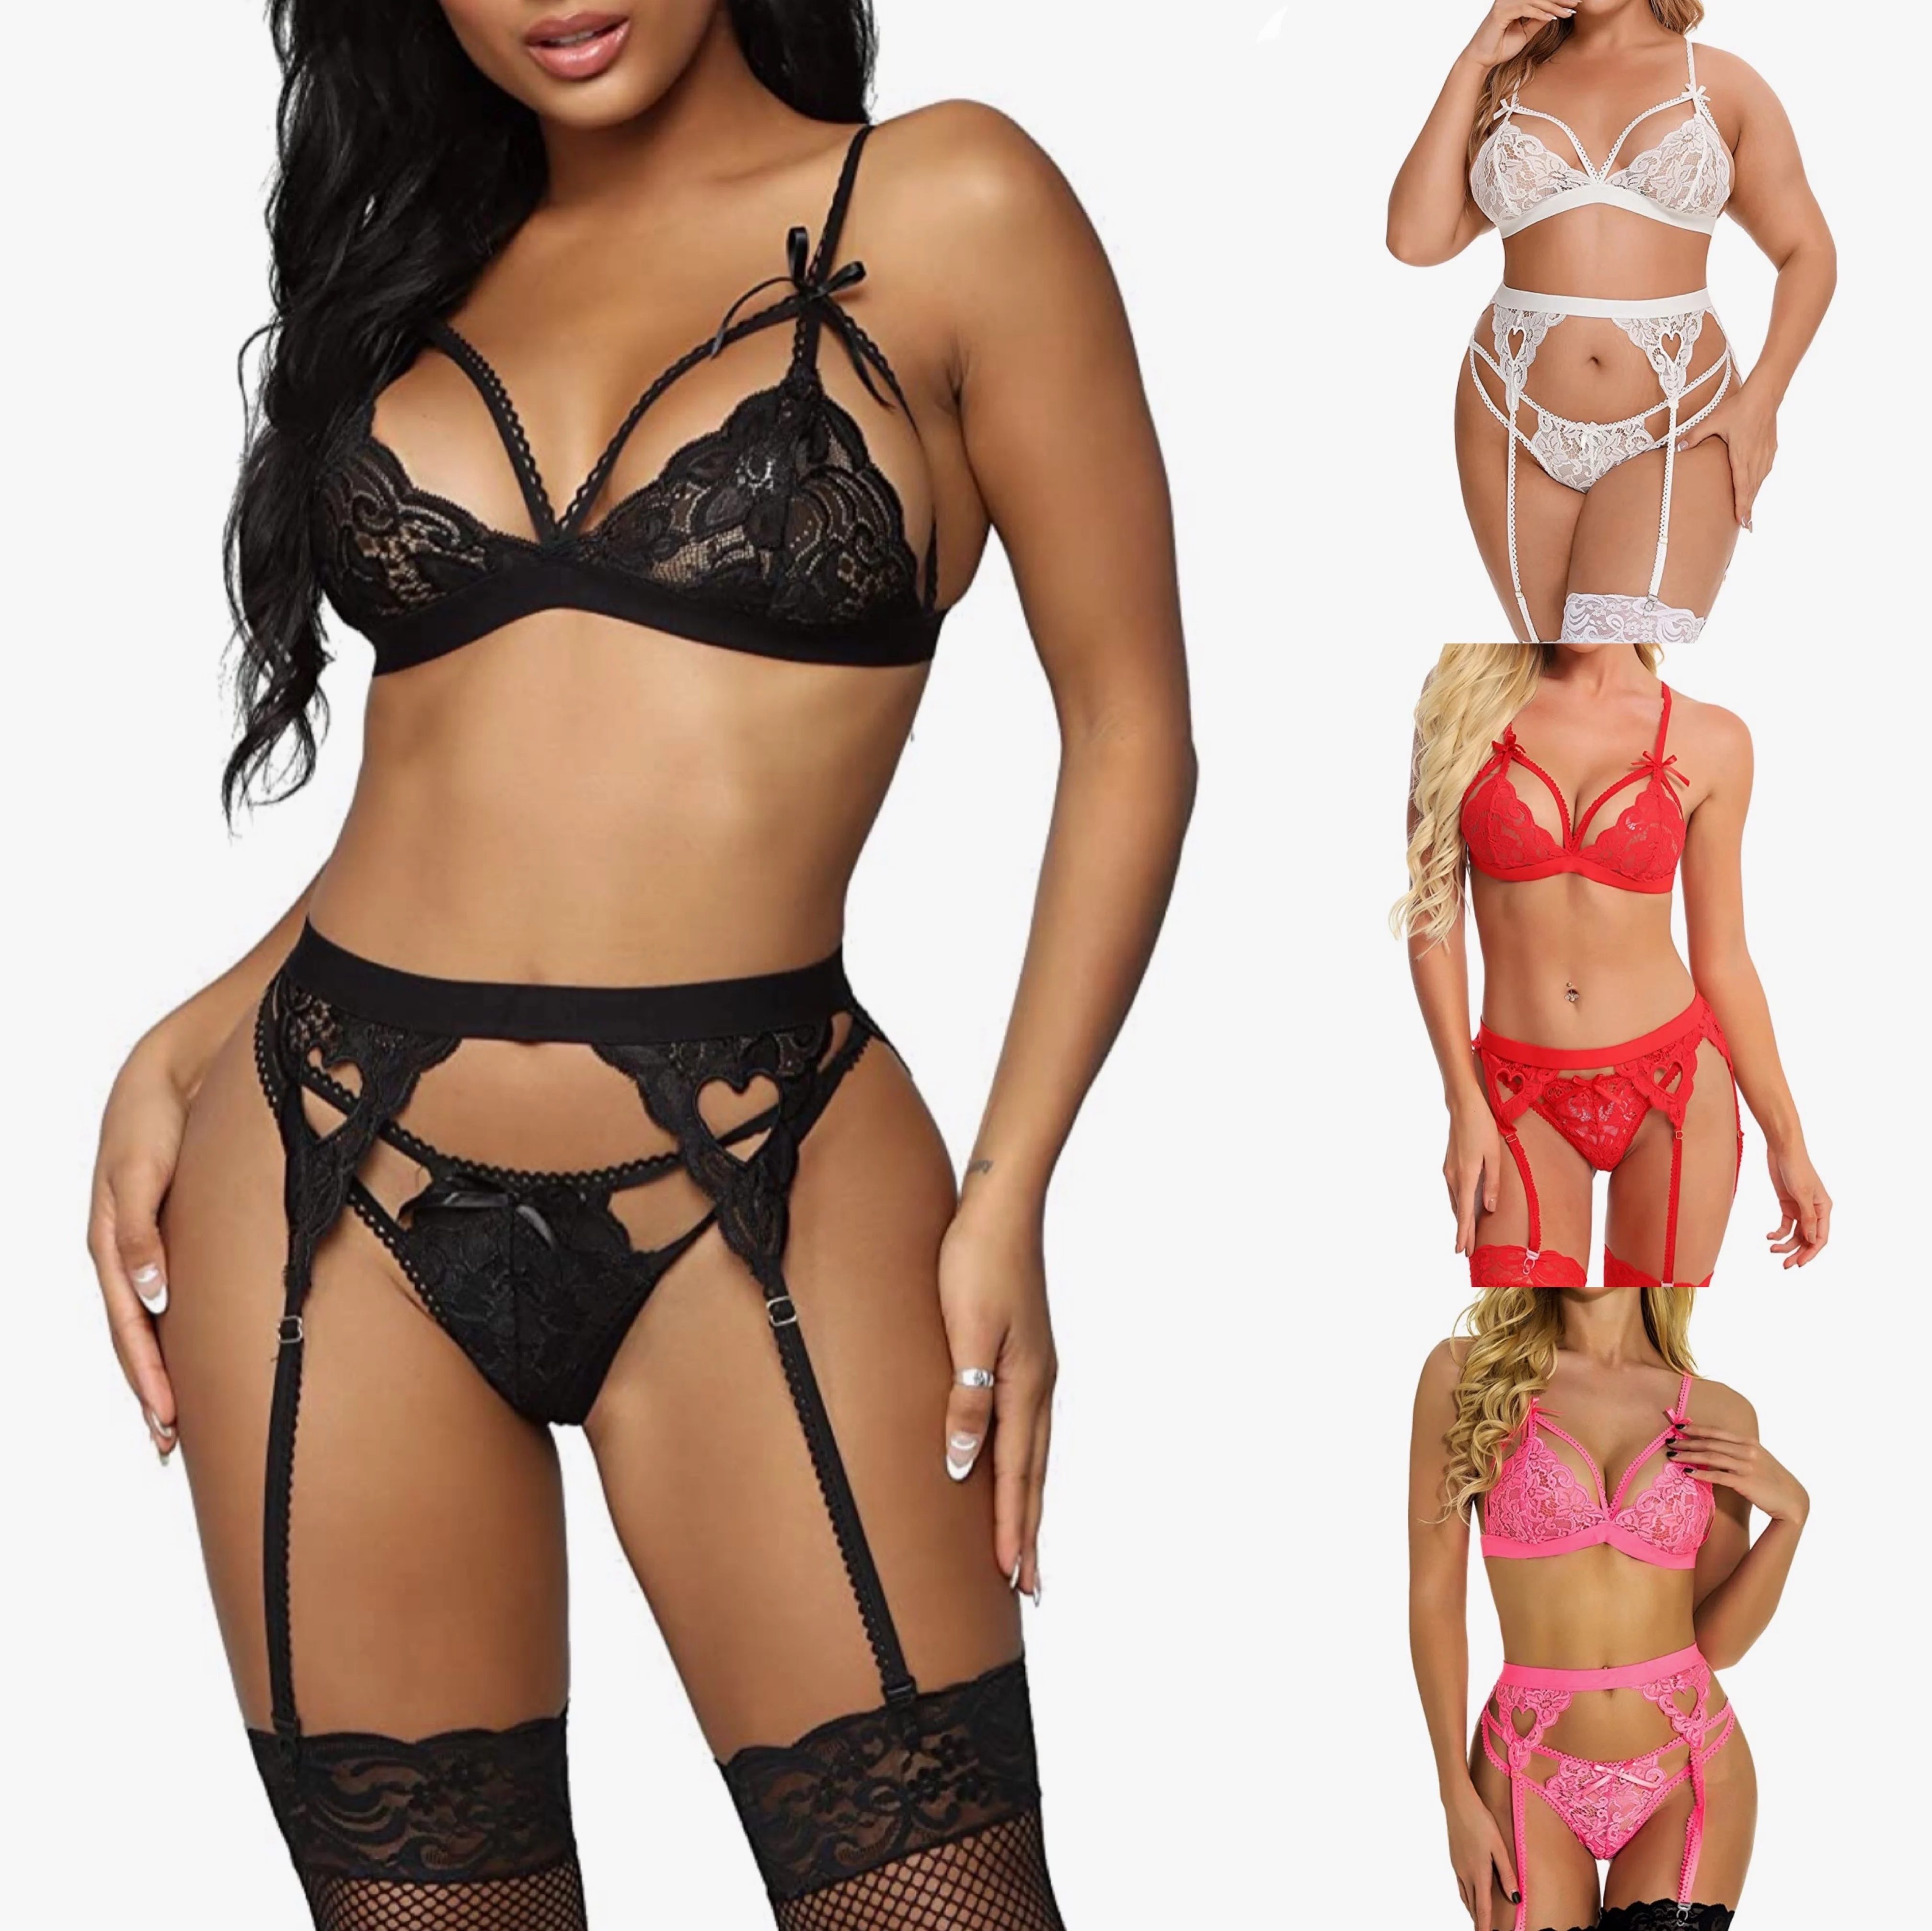 

Amazon Hot Sale Plus Size Erotic Lingerie Outfits 3 Piece Heart Langerie Sets Lingerie Sexy Bodysuit Women Suppliers Lingerie, Picture shows